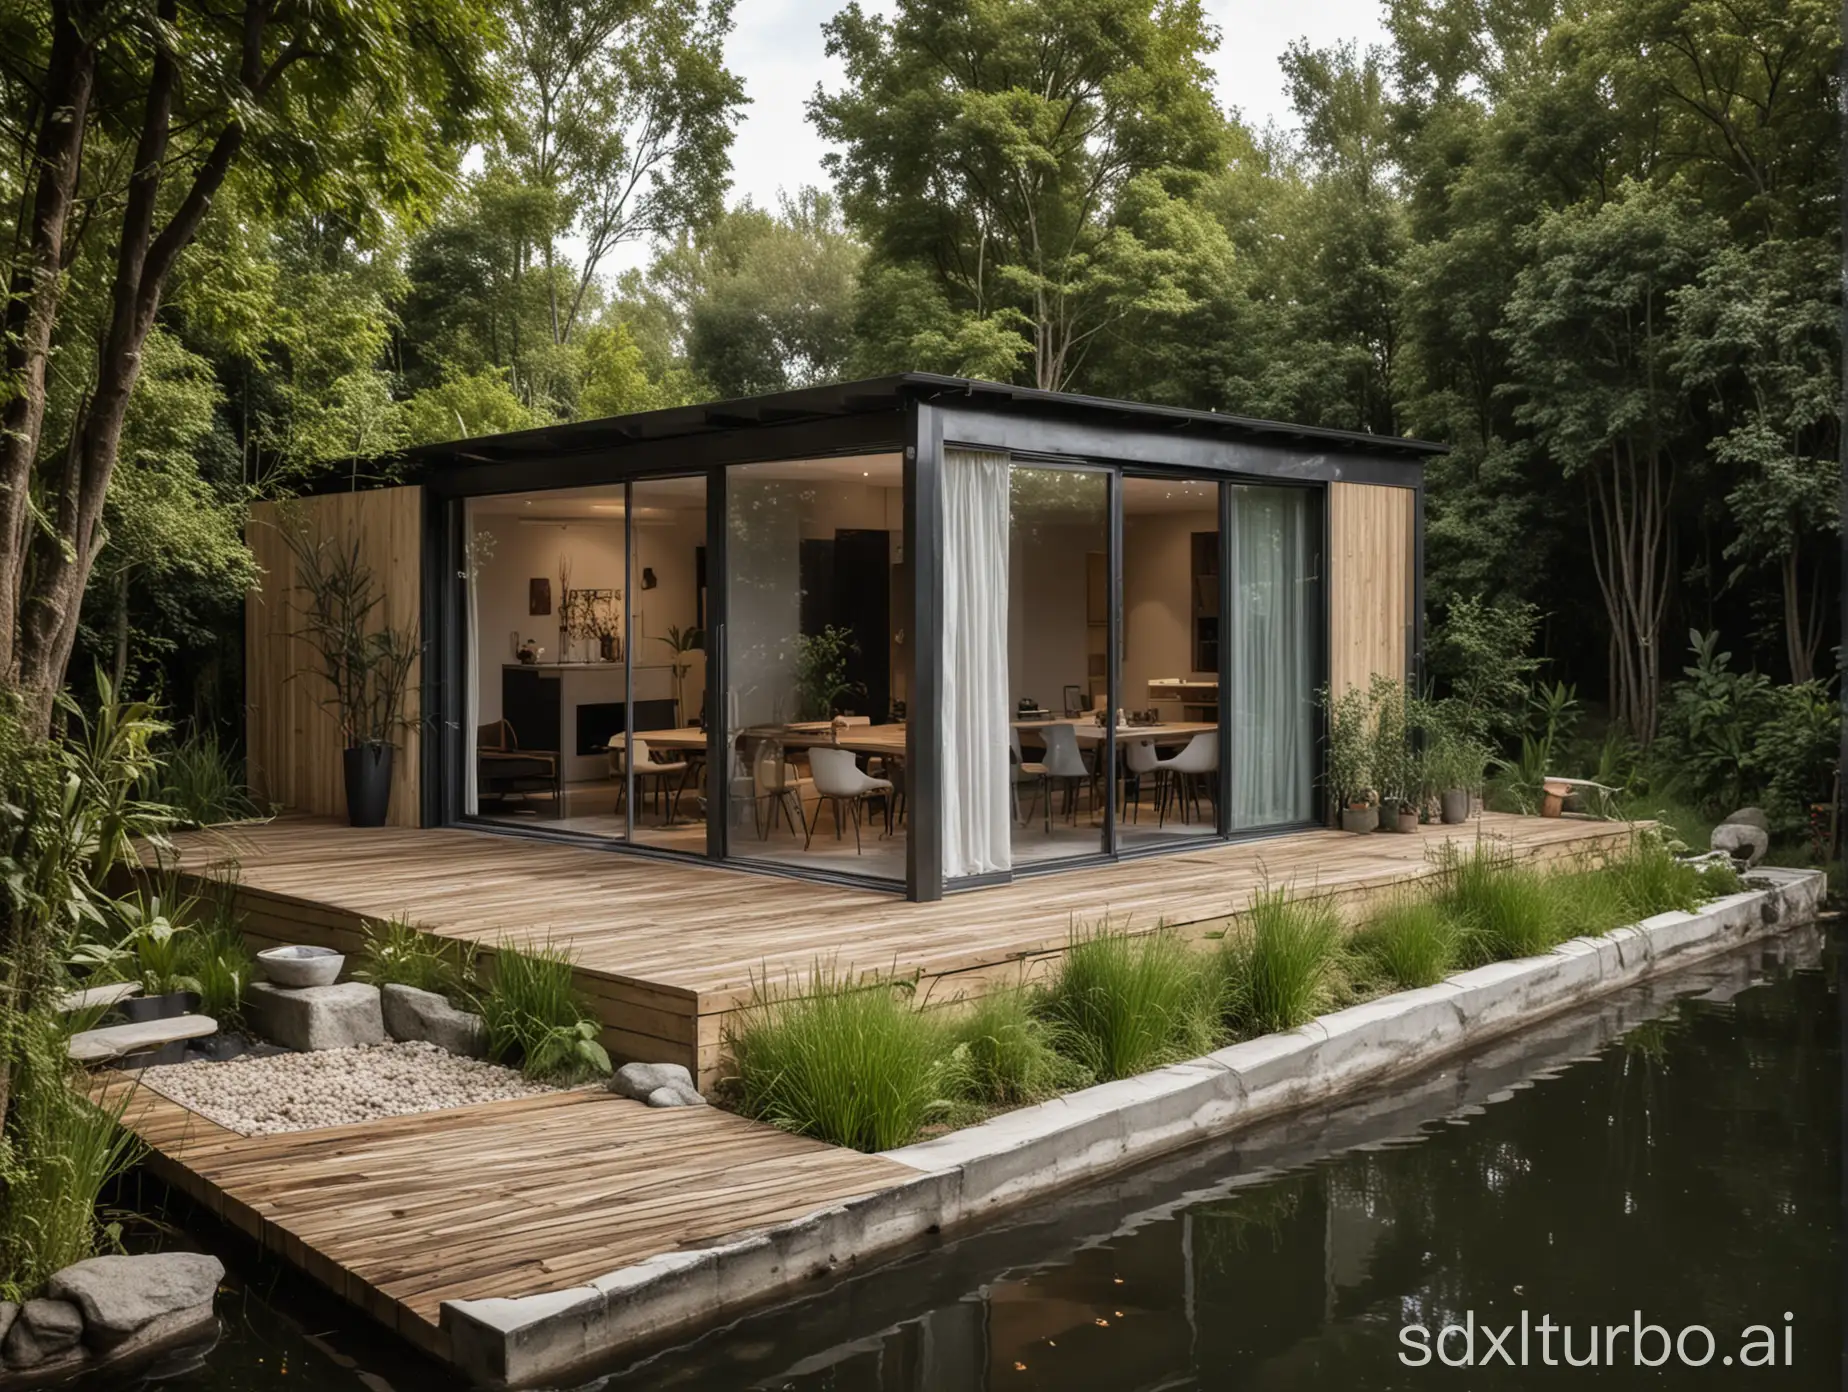 Crea una casa con forma de contenedor moderna con un pequeño estanque